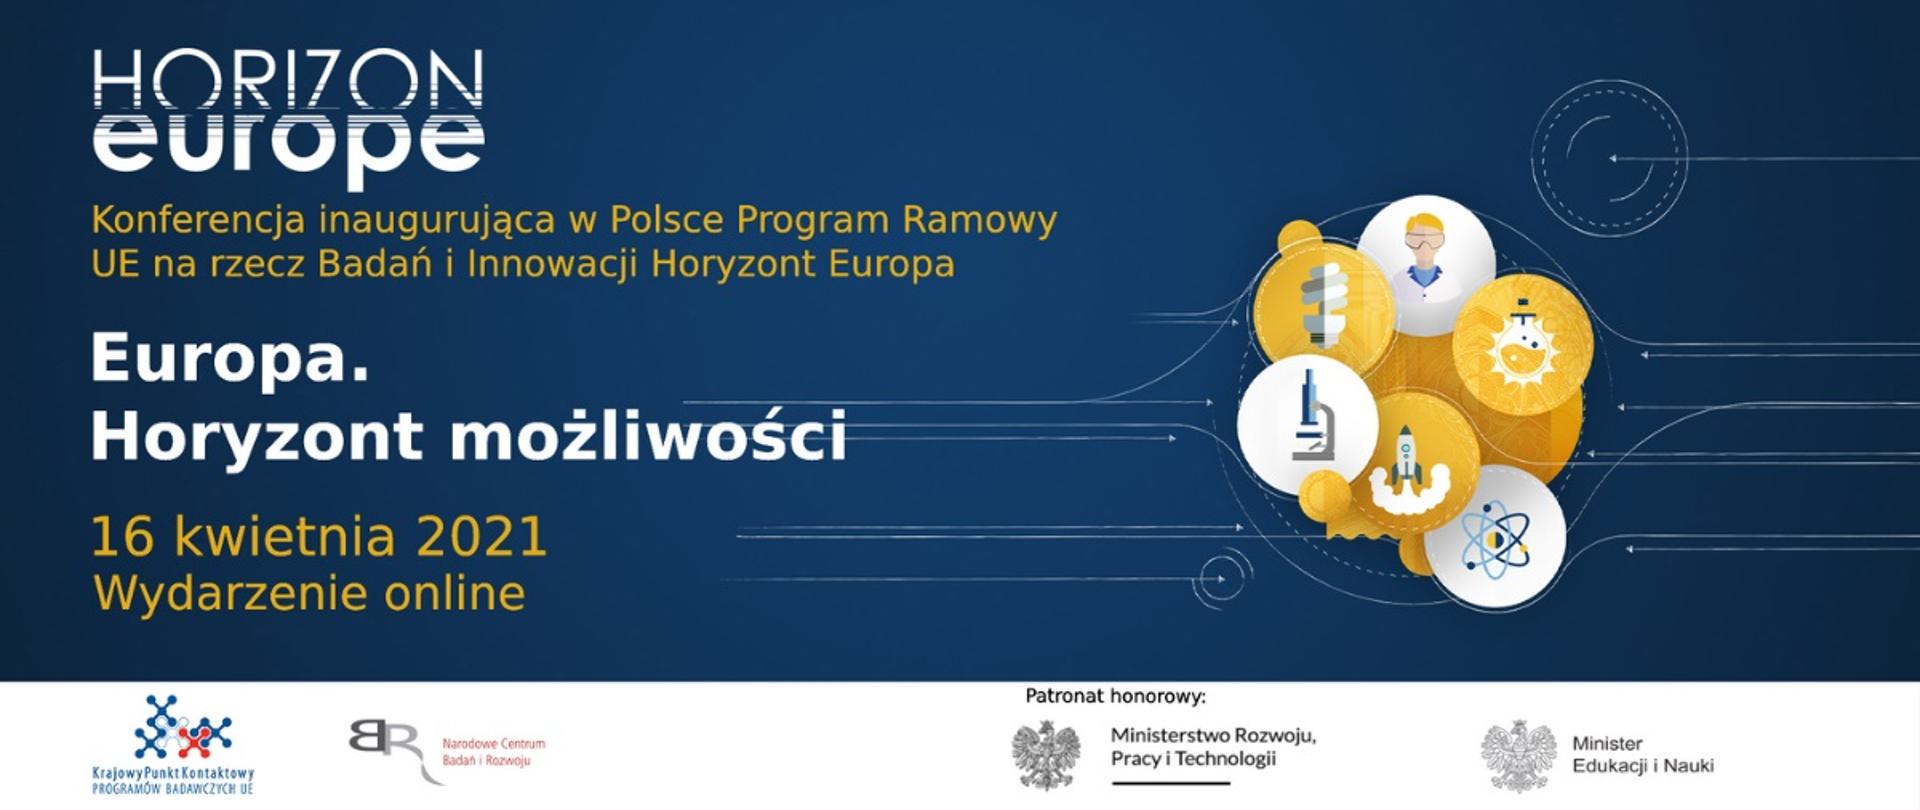 Baner z granatowym tłem od prawej do centralnej strony grafiki napis Konferencja inauguracyjna w Polsce Program Ramowy UE na rzecz Badań i innowacji Europa. u góry Logo Horizon Europe 